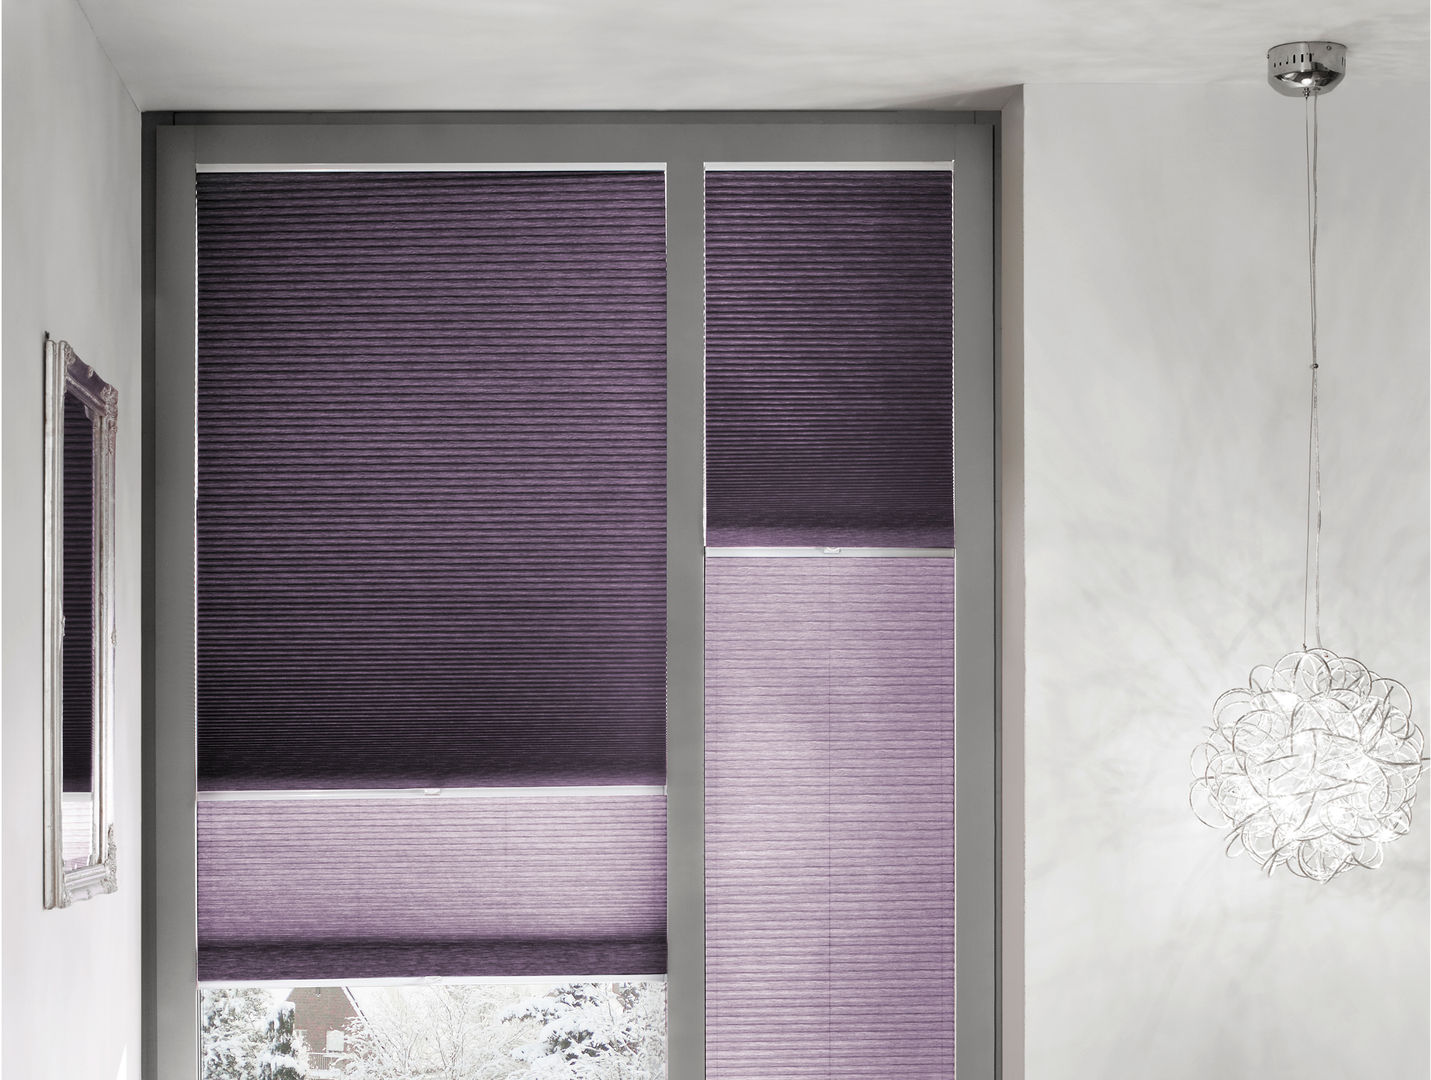 Tag-Nacht-Wabenplissees erfal GmbH & Co. KG Moderne Fenster & Türen Lila/Violett Rollos und Jalousien